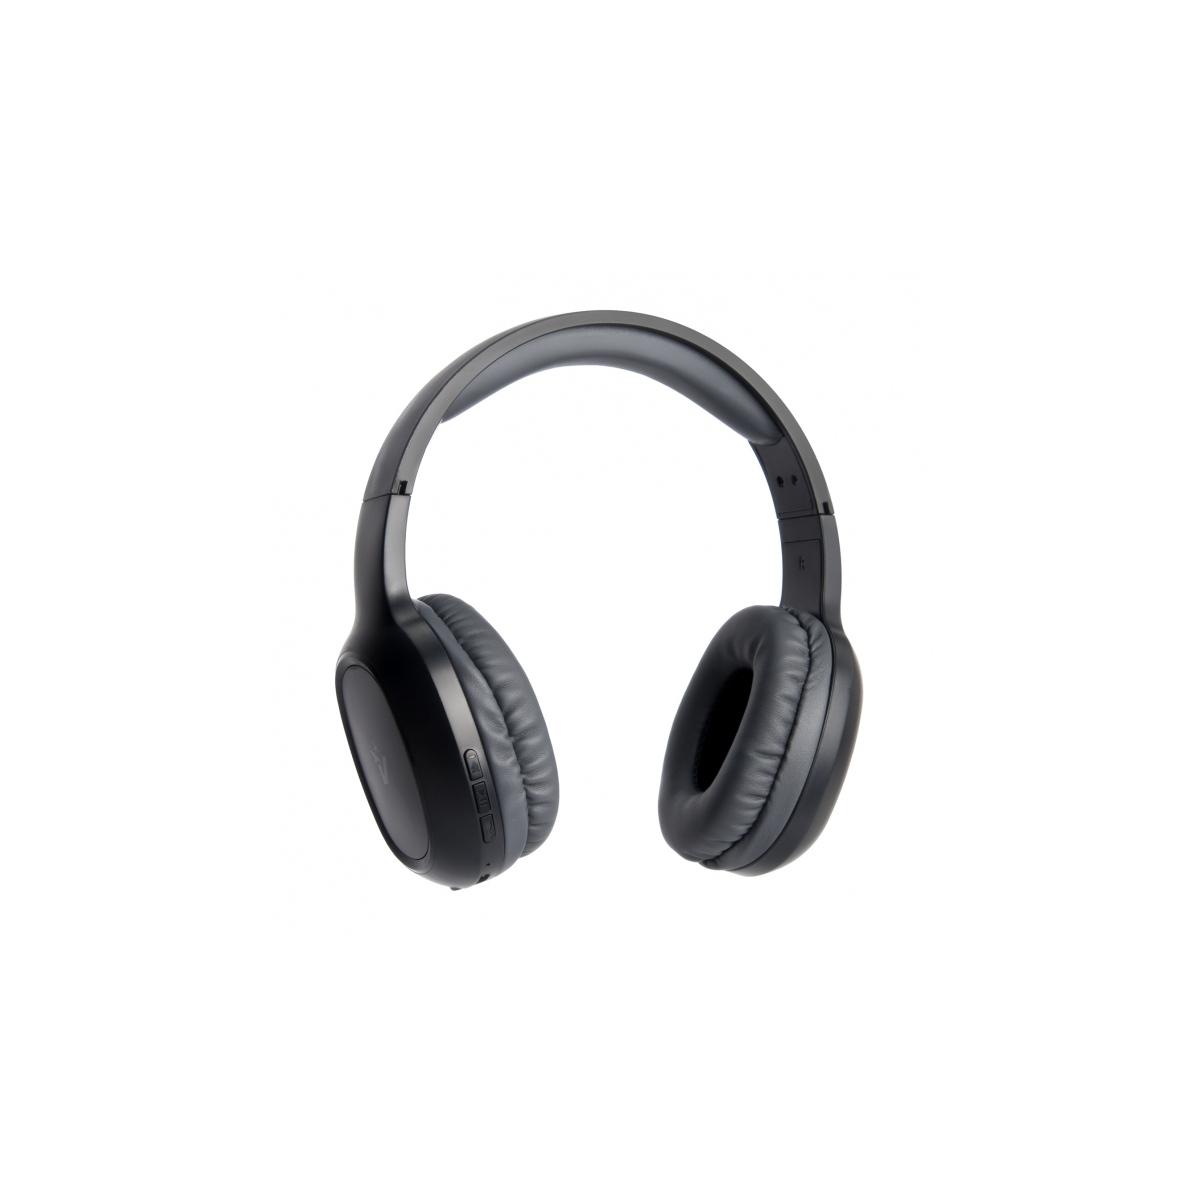 Cuffie Headphones Bluetooth 5.0 Vultech HBT-10K Nere Con Microfono e Controllo Traccia